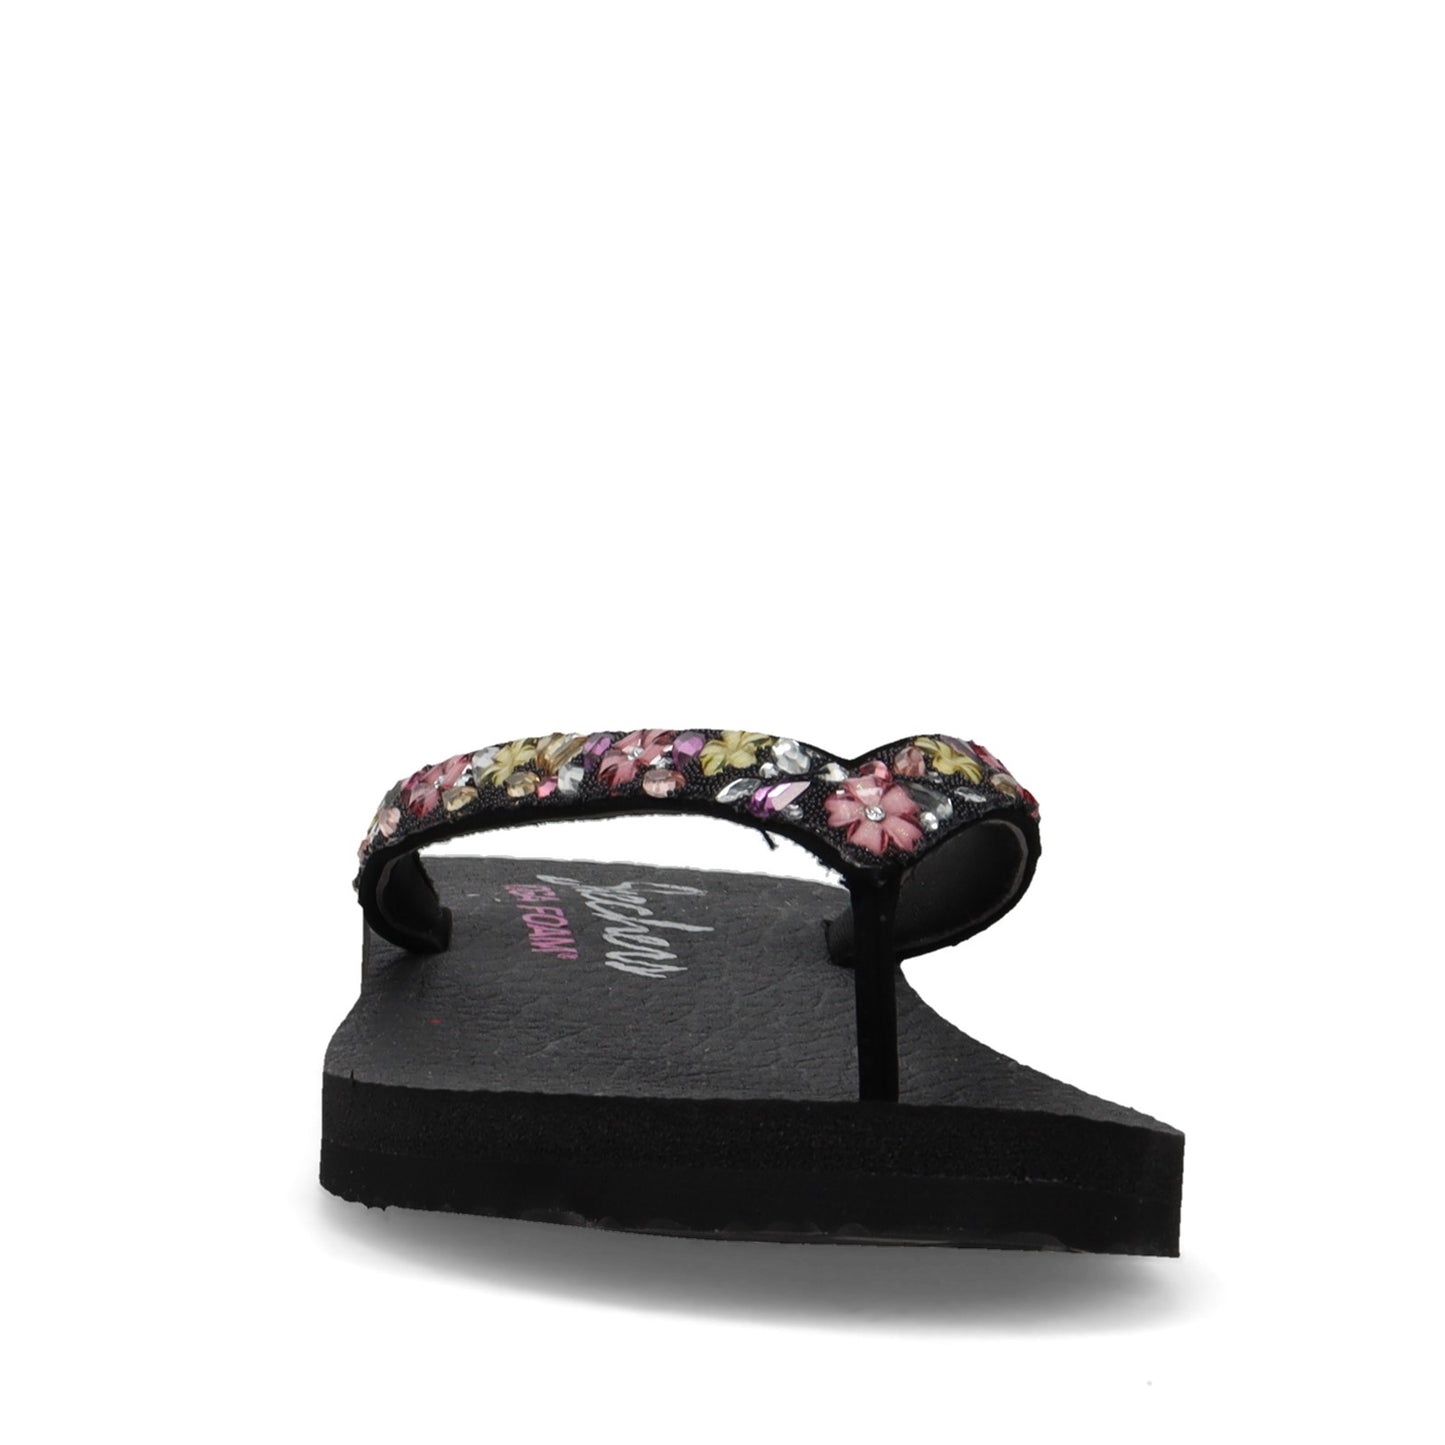 Peltz Shoes  Women's Skechers Meditation - Daisy Garden Sandal Black Multi 119153-BKMT